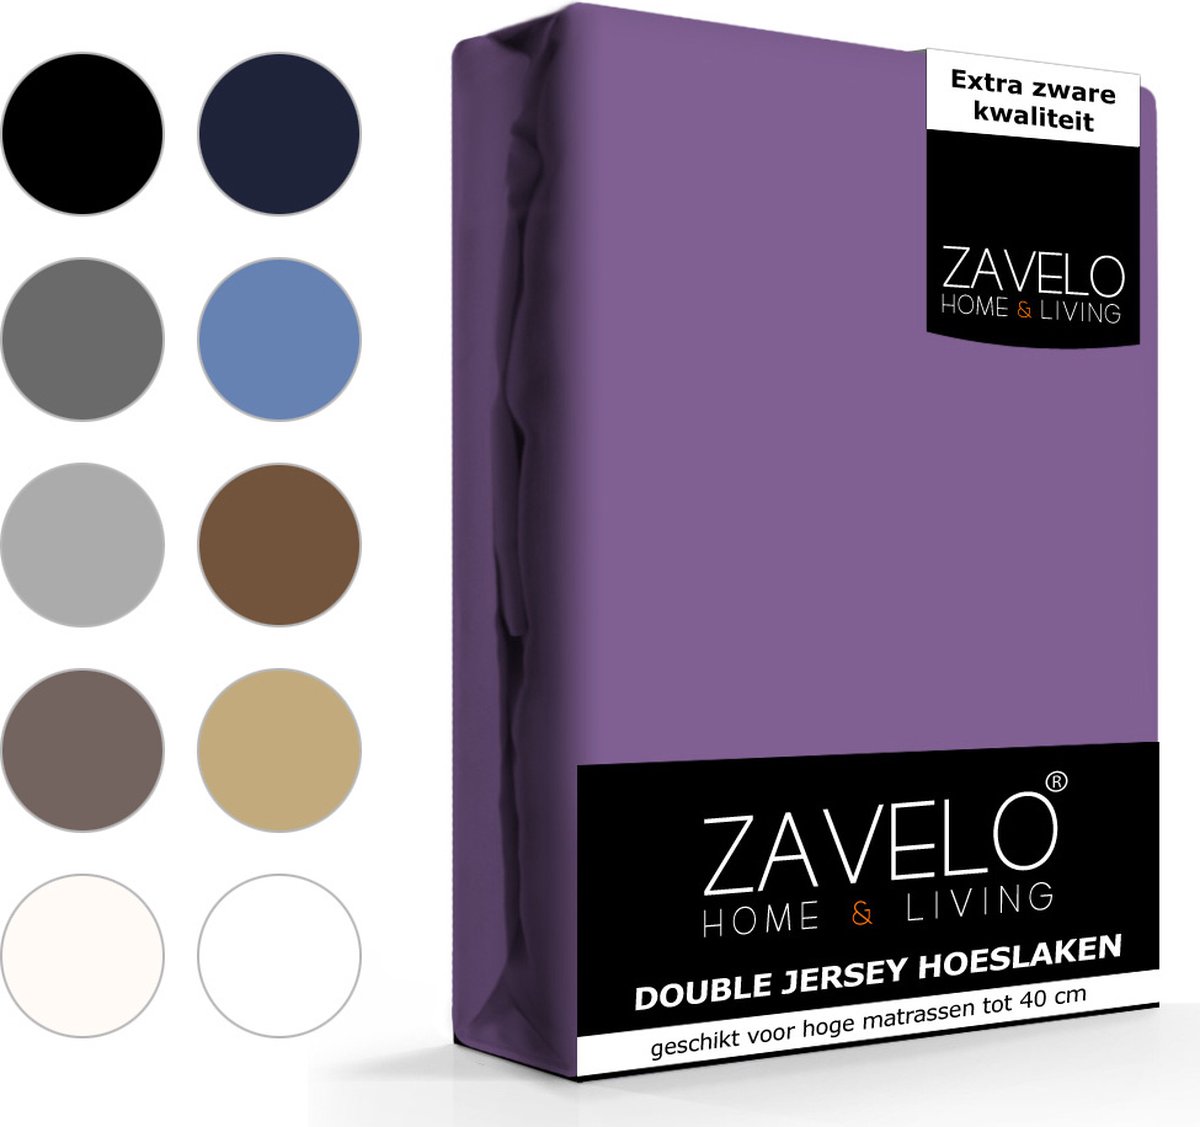 Slaaptextiel Zavelo Double Jersey Hoeslaken-1-persoons (90x200 Cm) - Paars